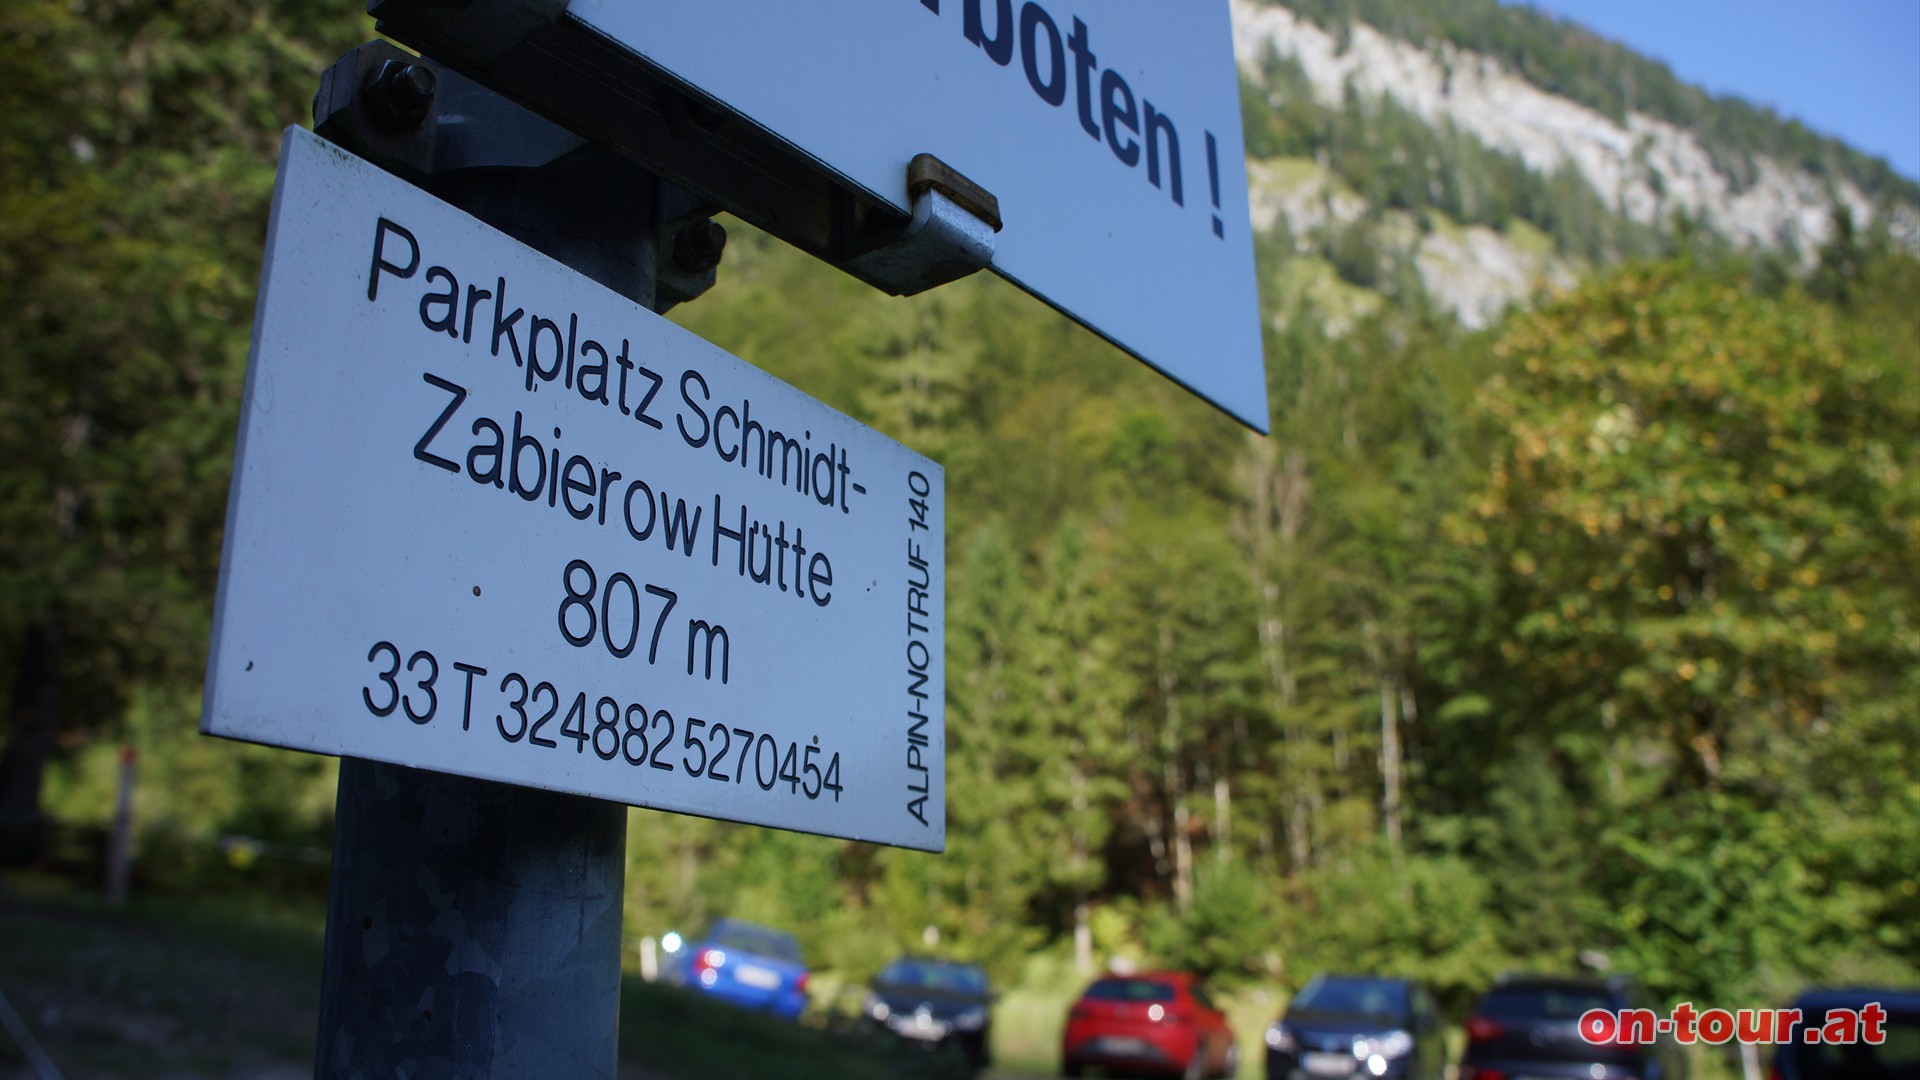 Ausgangspunkt: Parkplatz Schmidt-Zabierow Htte im Loferer Hochtal